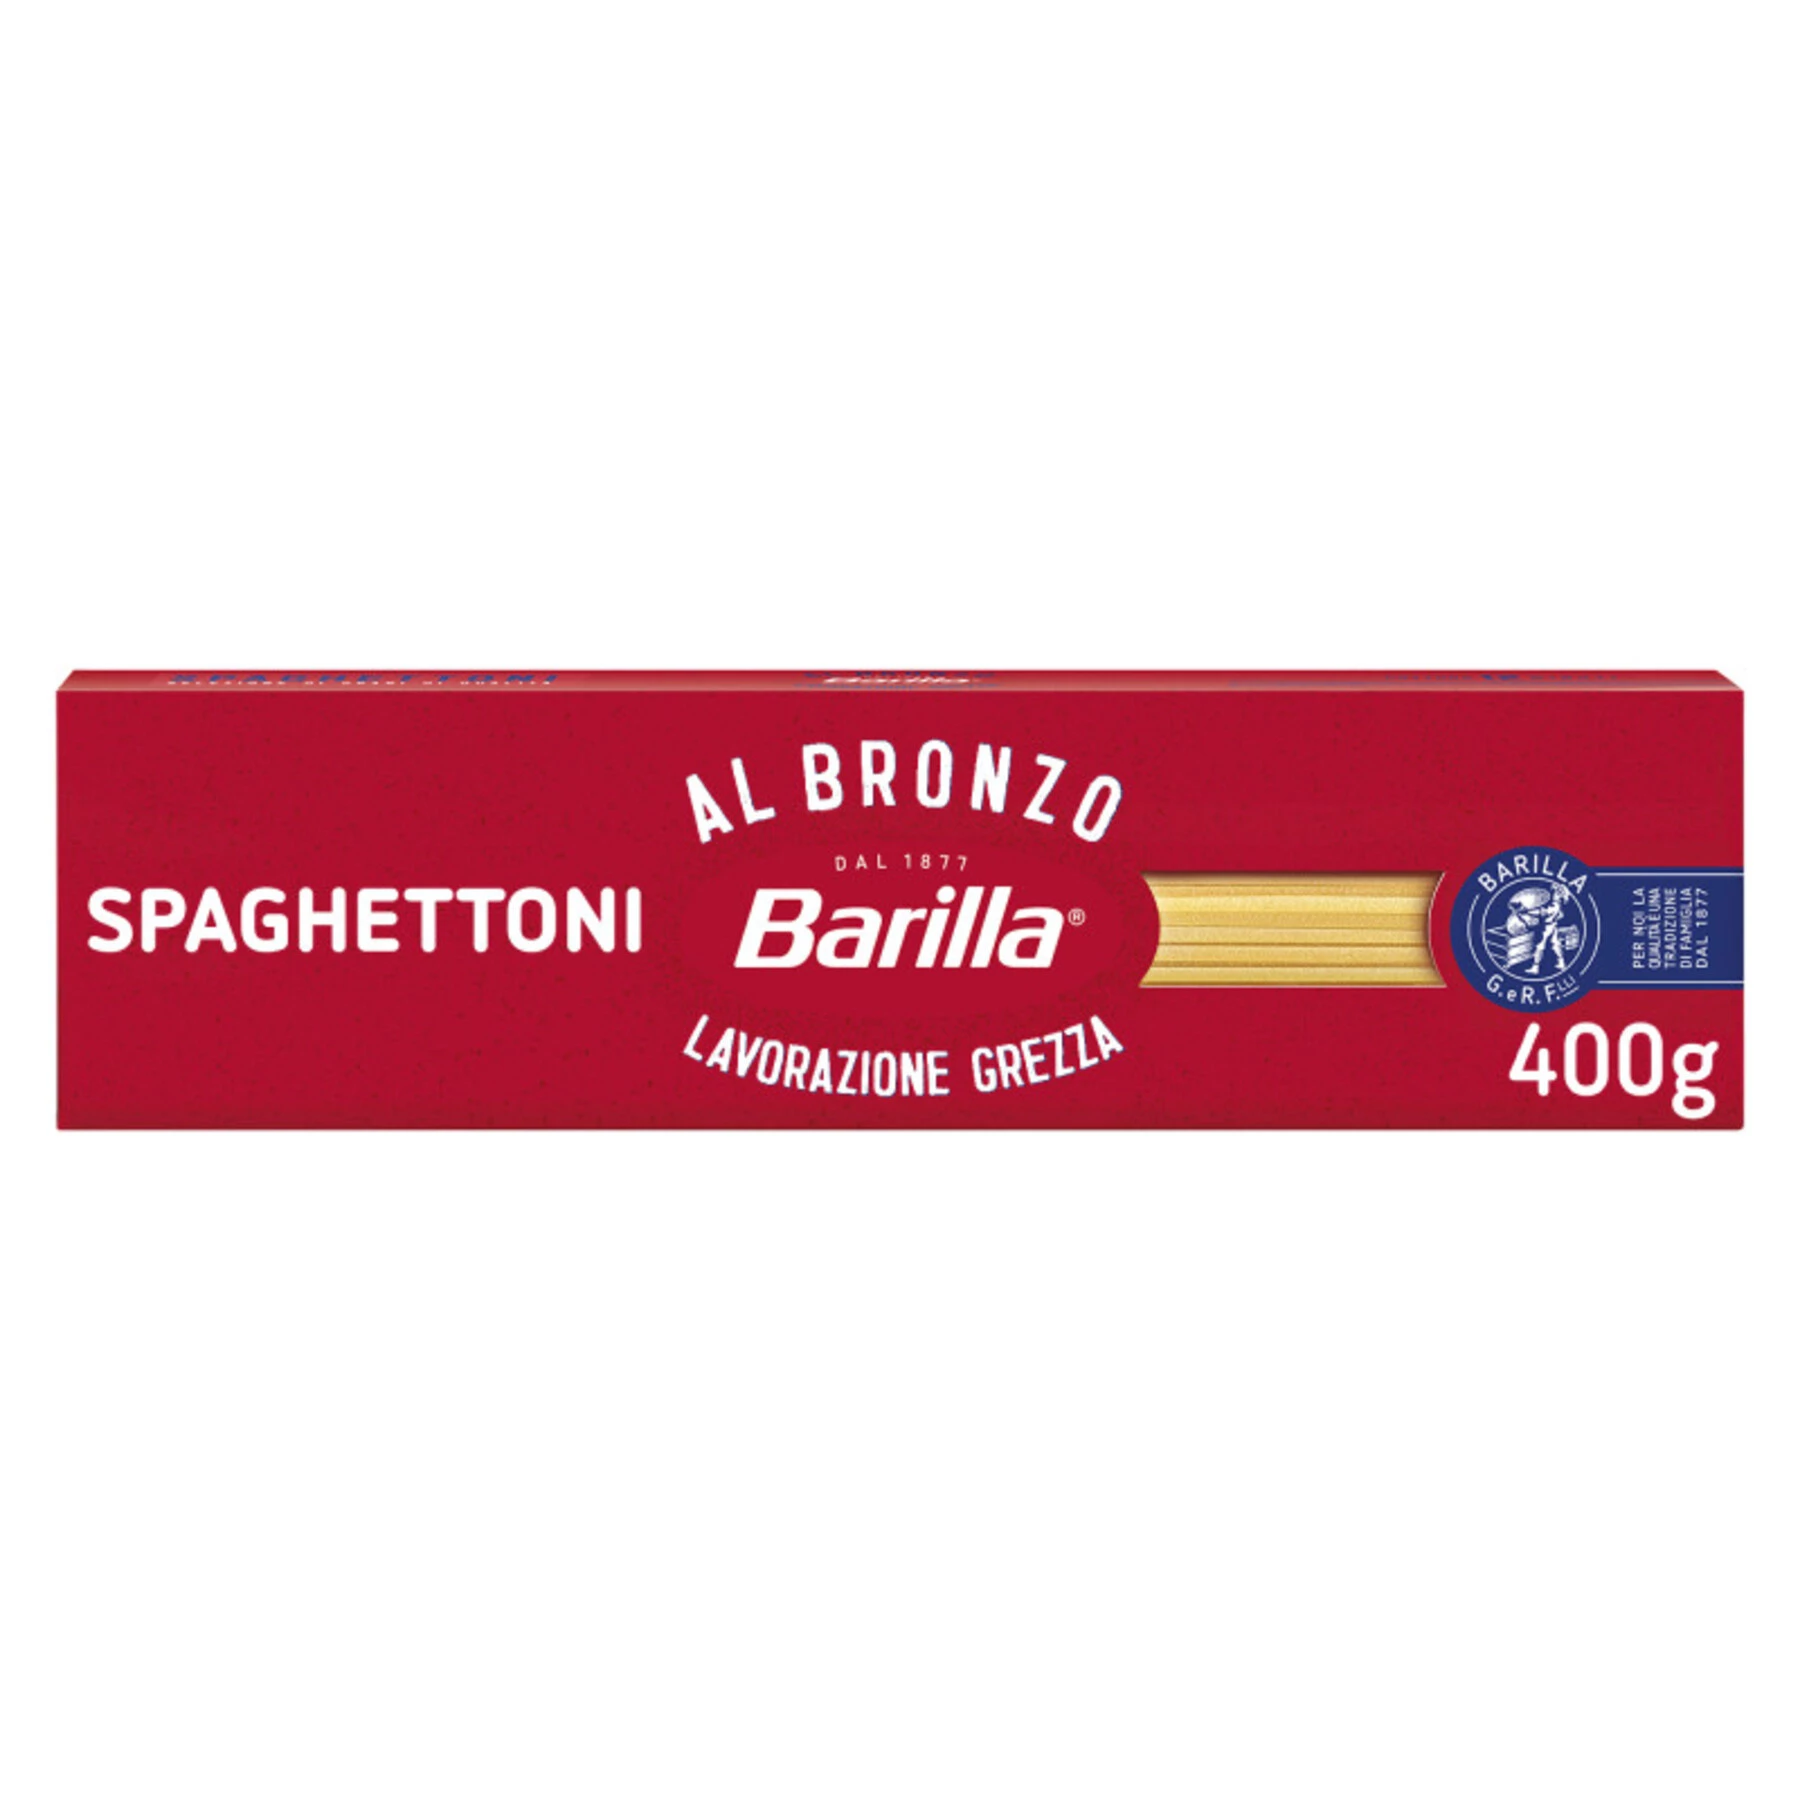 Bronze spaghetti pate 400G - BARILLA